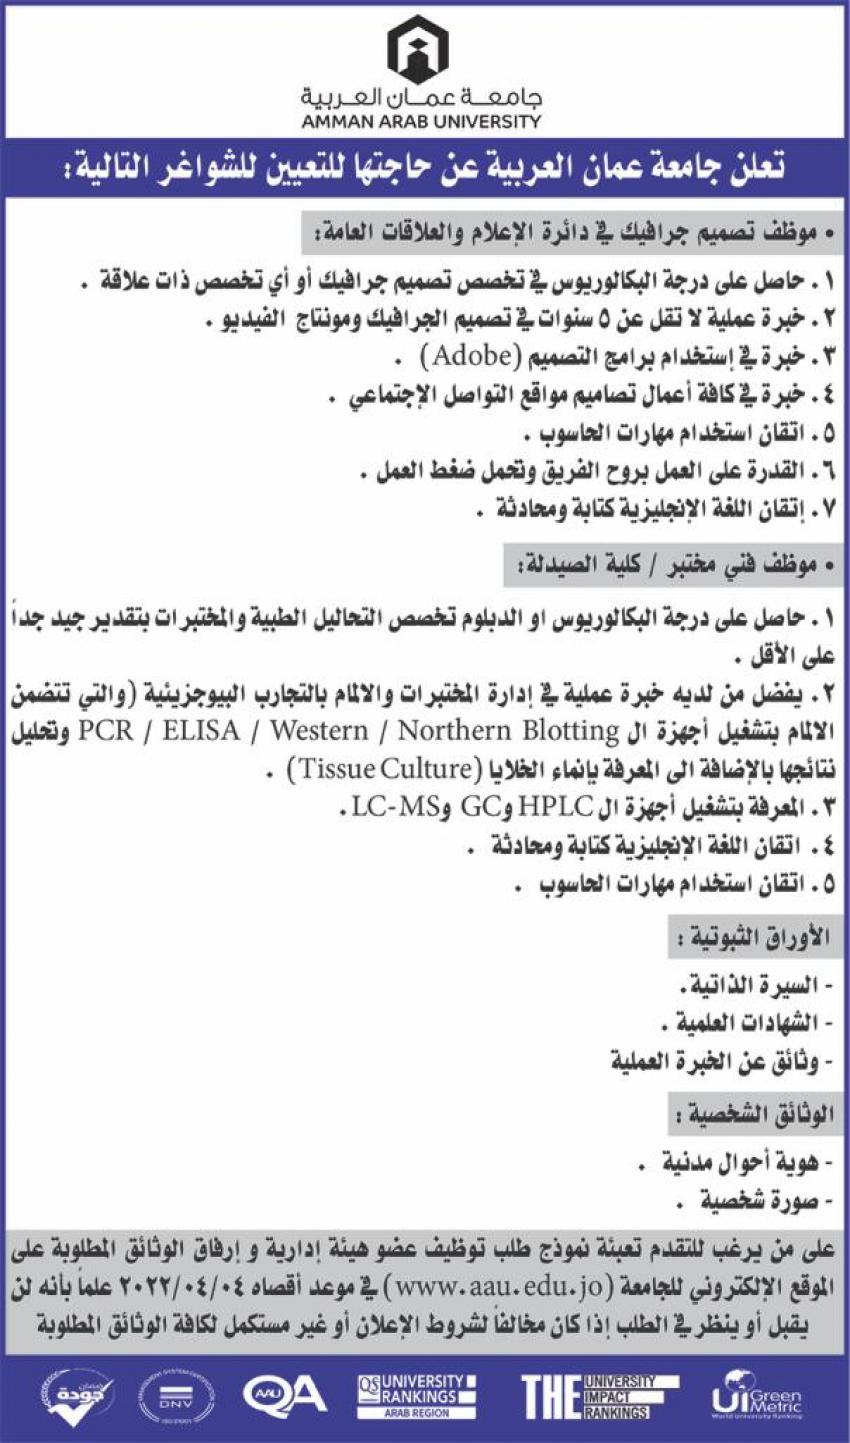 وظائف شاغرة لدى جامعة عمان العربية